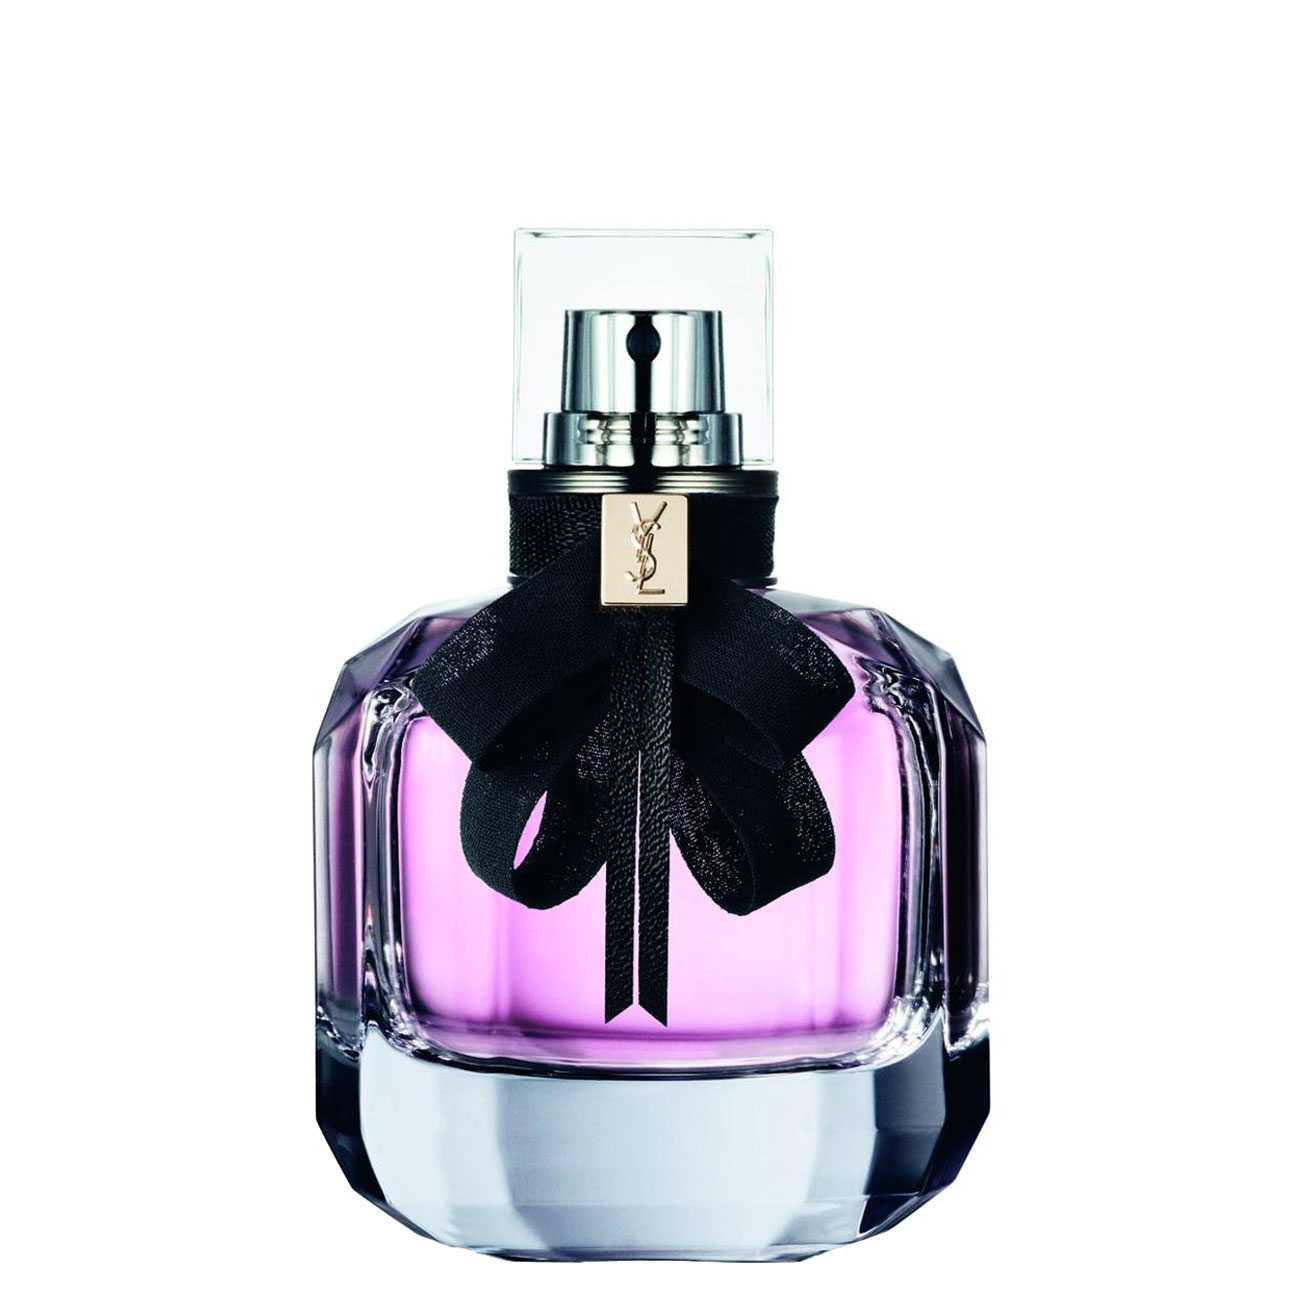 Apa de Parfum Yves Saint Laurent MON PARIS 90ml cu comanda online